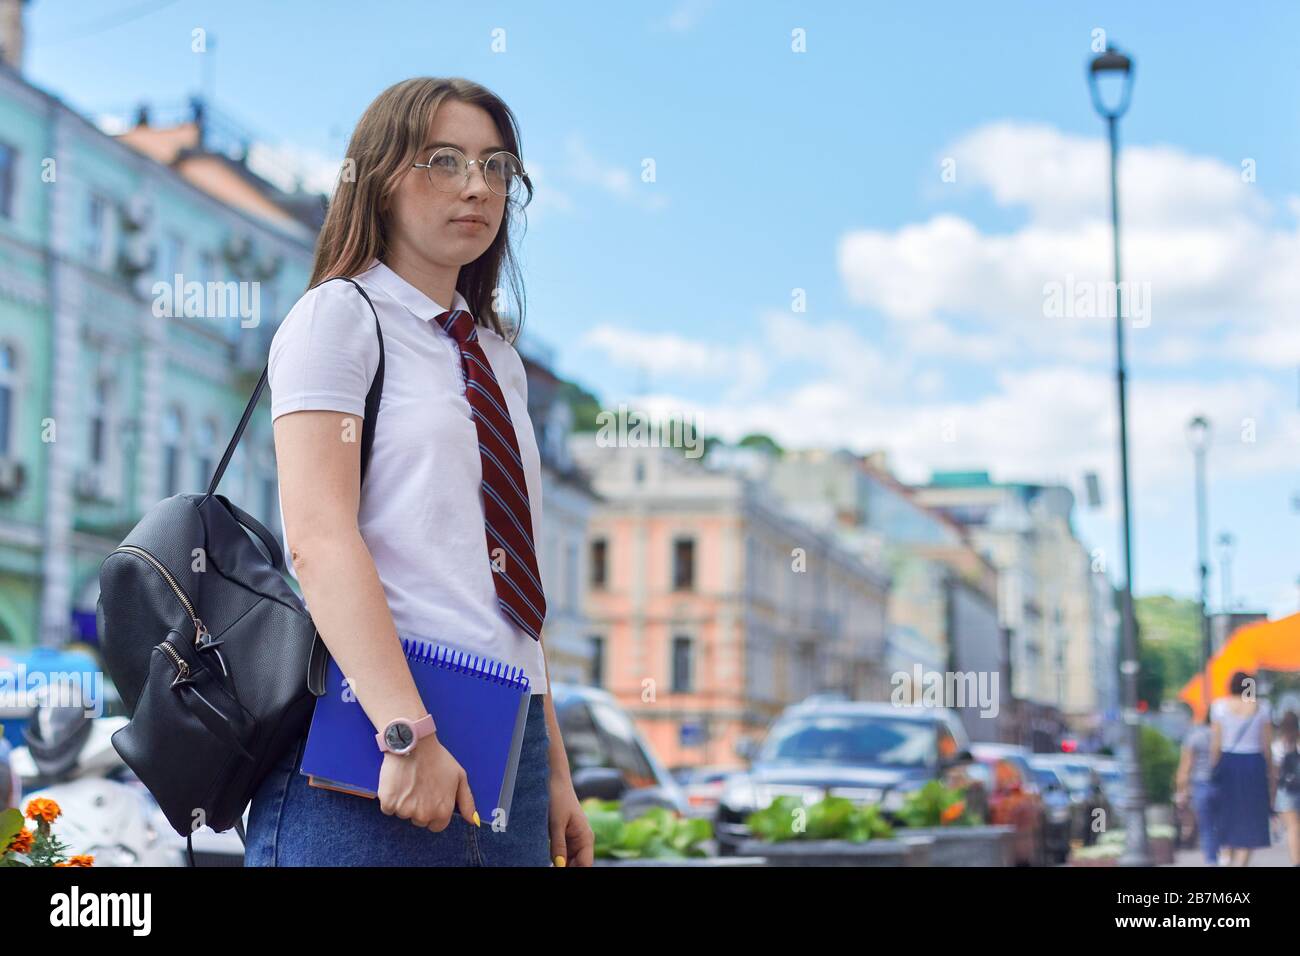 Jeune fille 17, 18 ans étudiant de lycée dans la ville en regardant à côté,  copier l'espace. Femme au niveau de la cravate, lunettes, t-shirt blanc,  sac à dos, ordinateur portable Photo